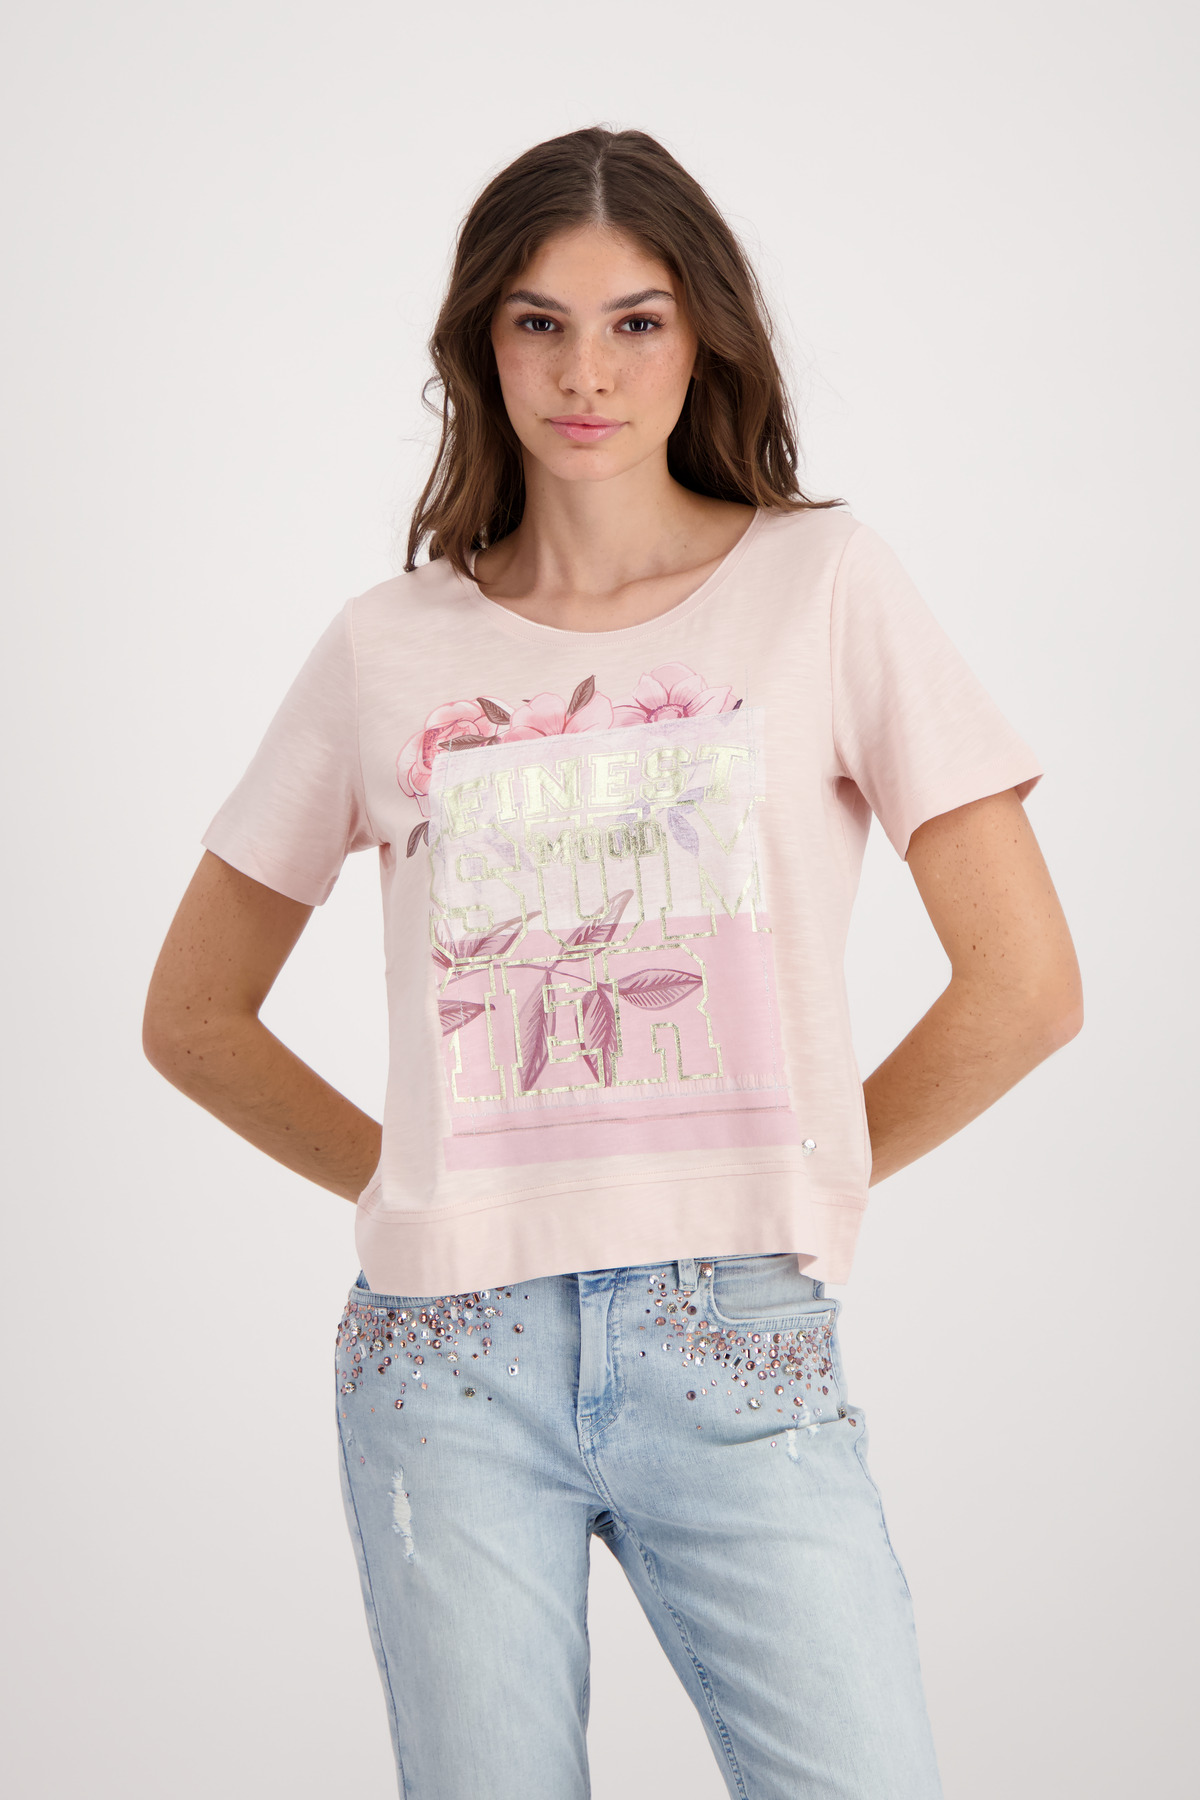 Onlineshop Monari Flach - T-Shirt Mode von